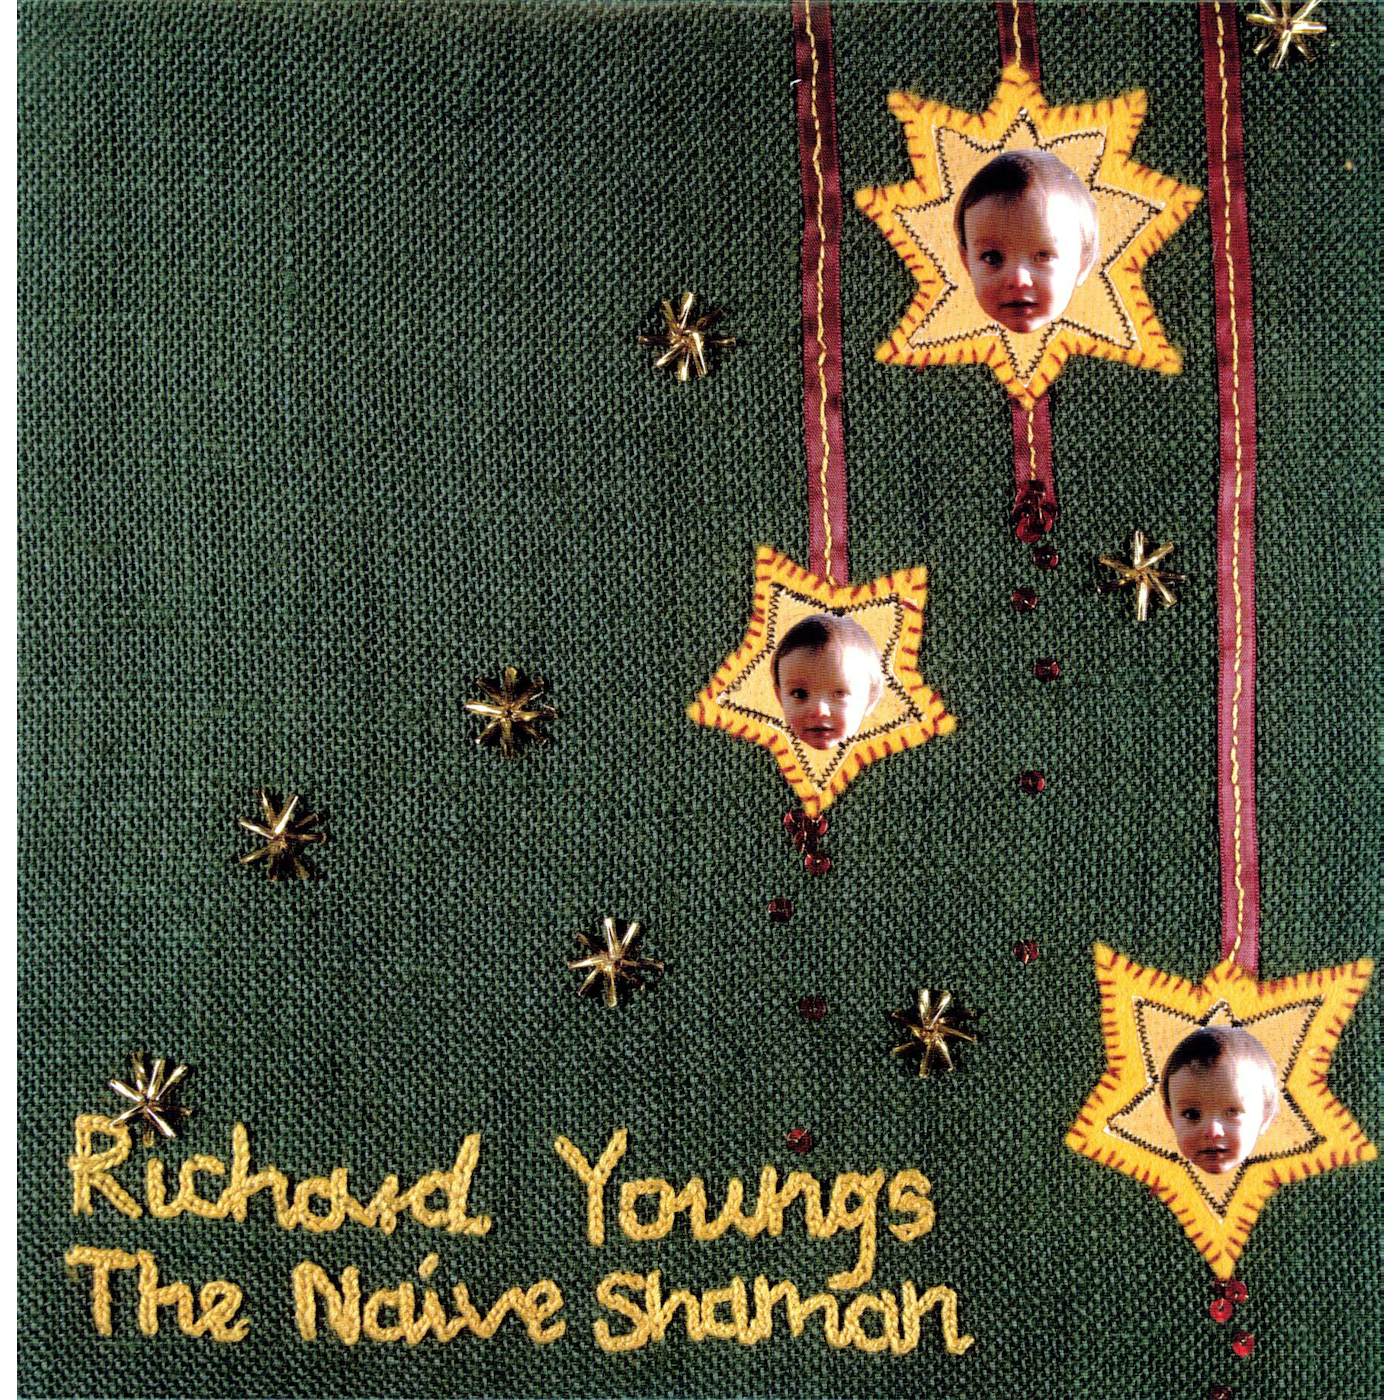 Richard Youngs NAIVE SHAMAN Vinyl Record